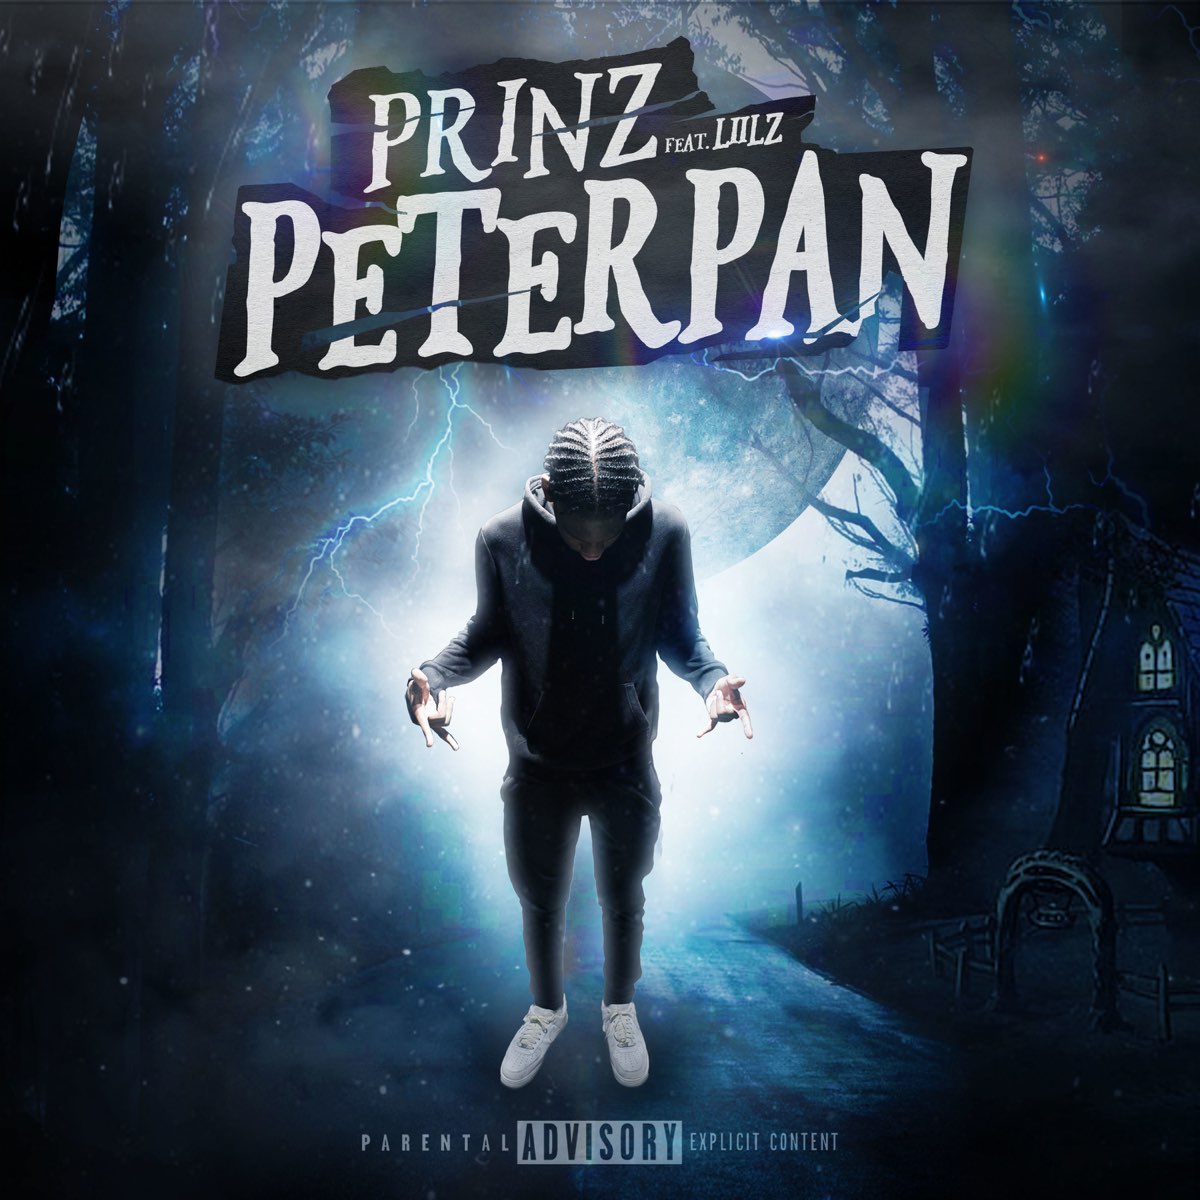 Prinz peter pan lyrics